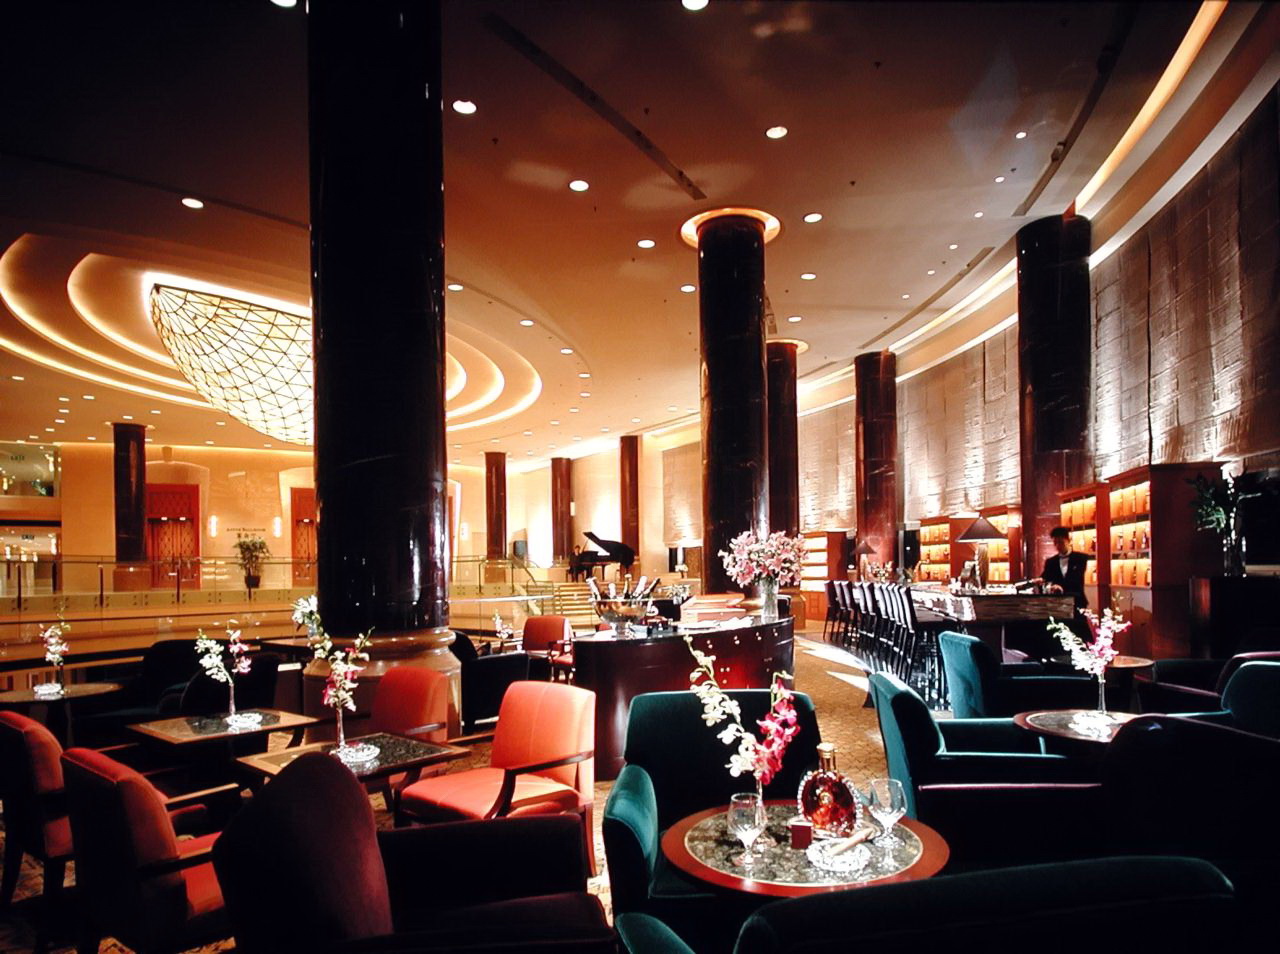 上海瑞吉红塔大酒店图片